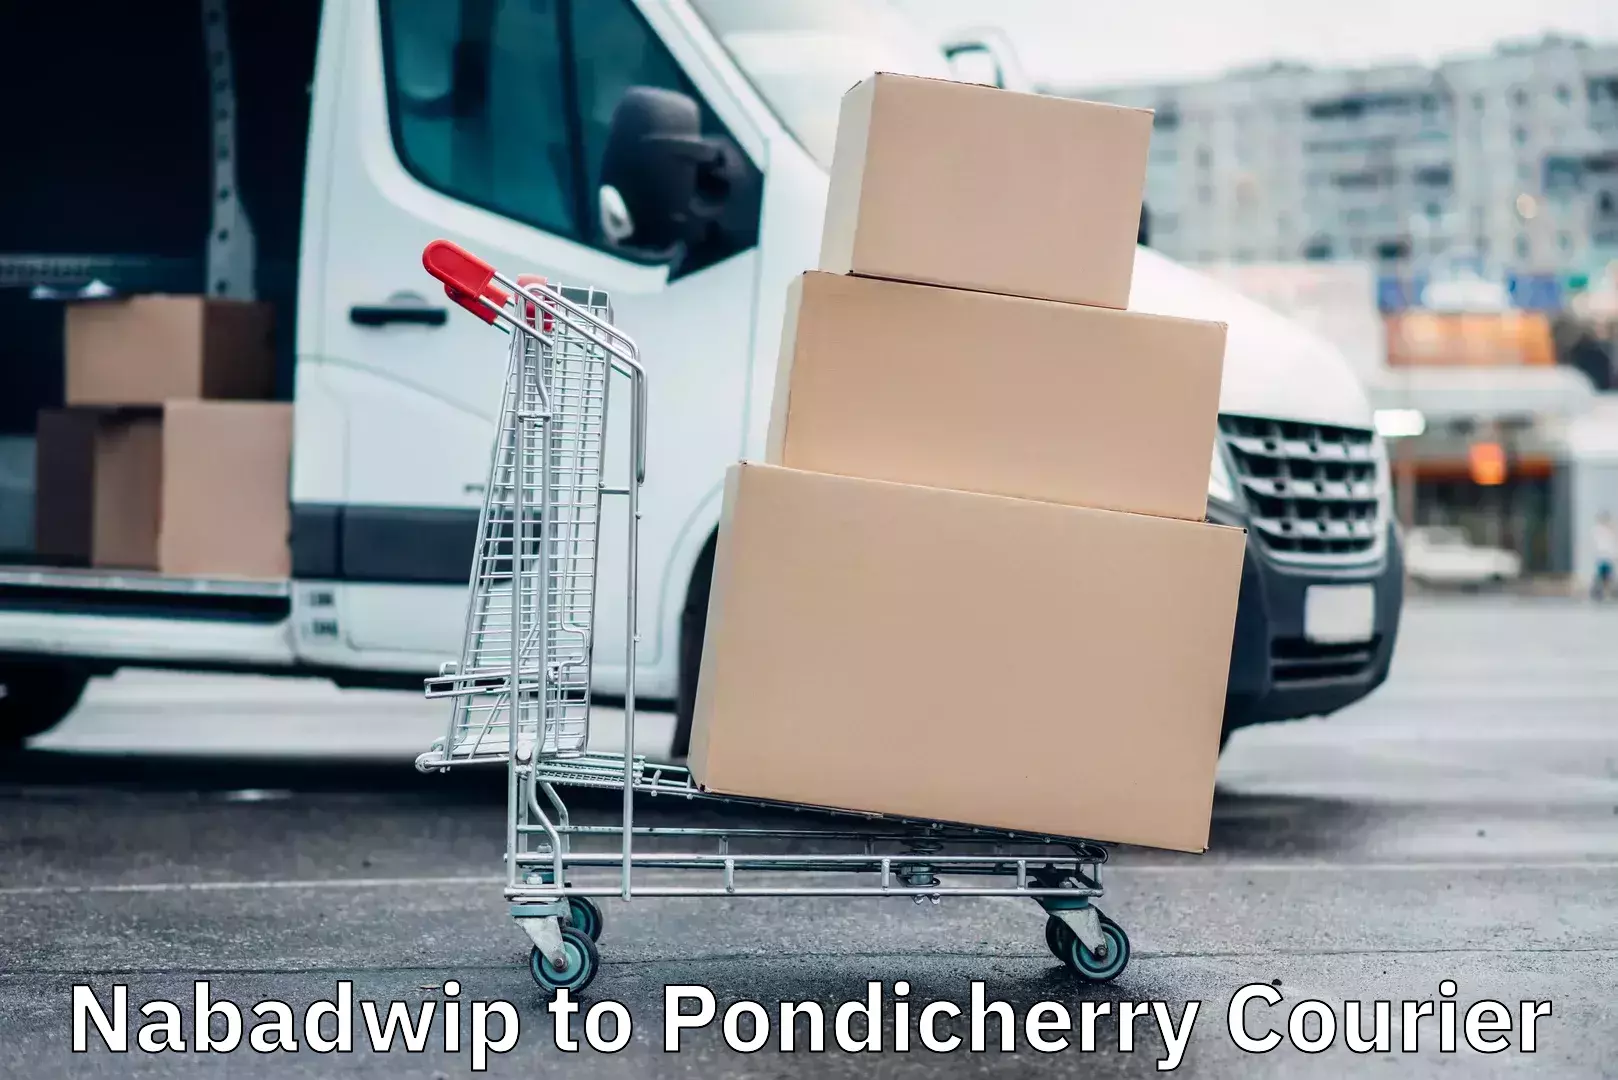 Efficient parcel service Nabadwip to Pondicherry